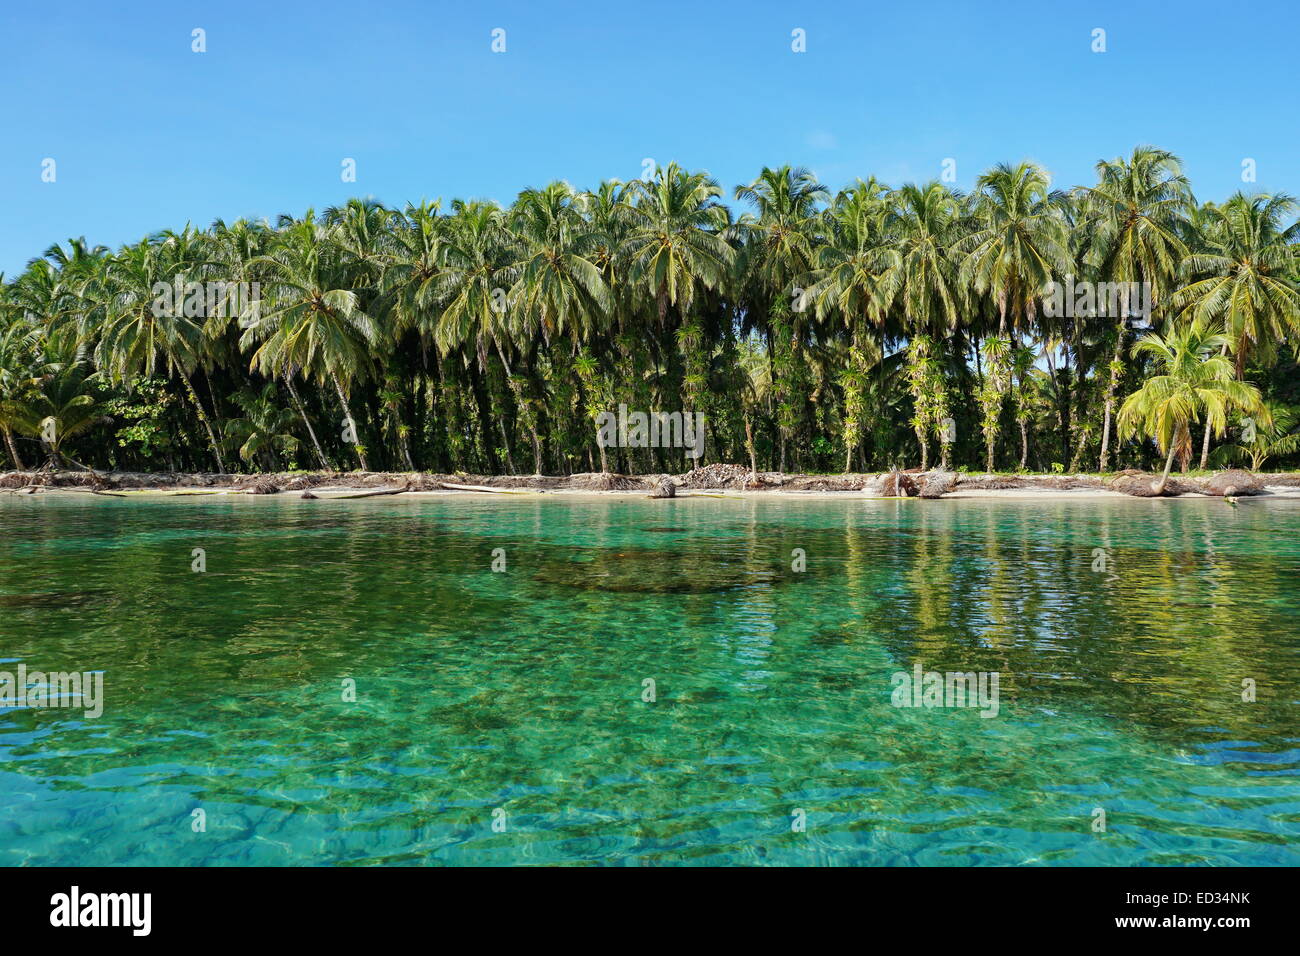 Lussureggianti alberi di noce di cocco con gli epifiti sulla costa tropicale con acqua chiara, Caraibi, Zapatillas isole di Bocas del Toro, Panama Foto Stock